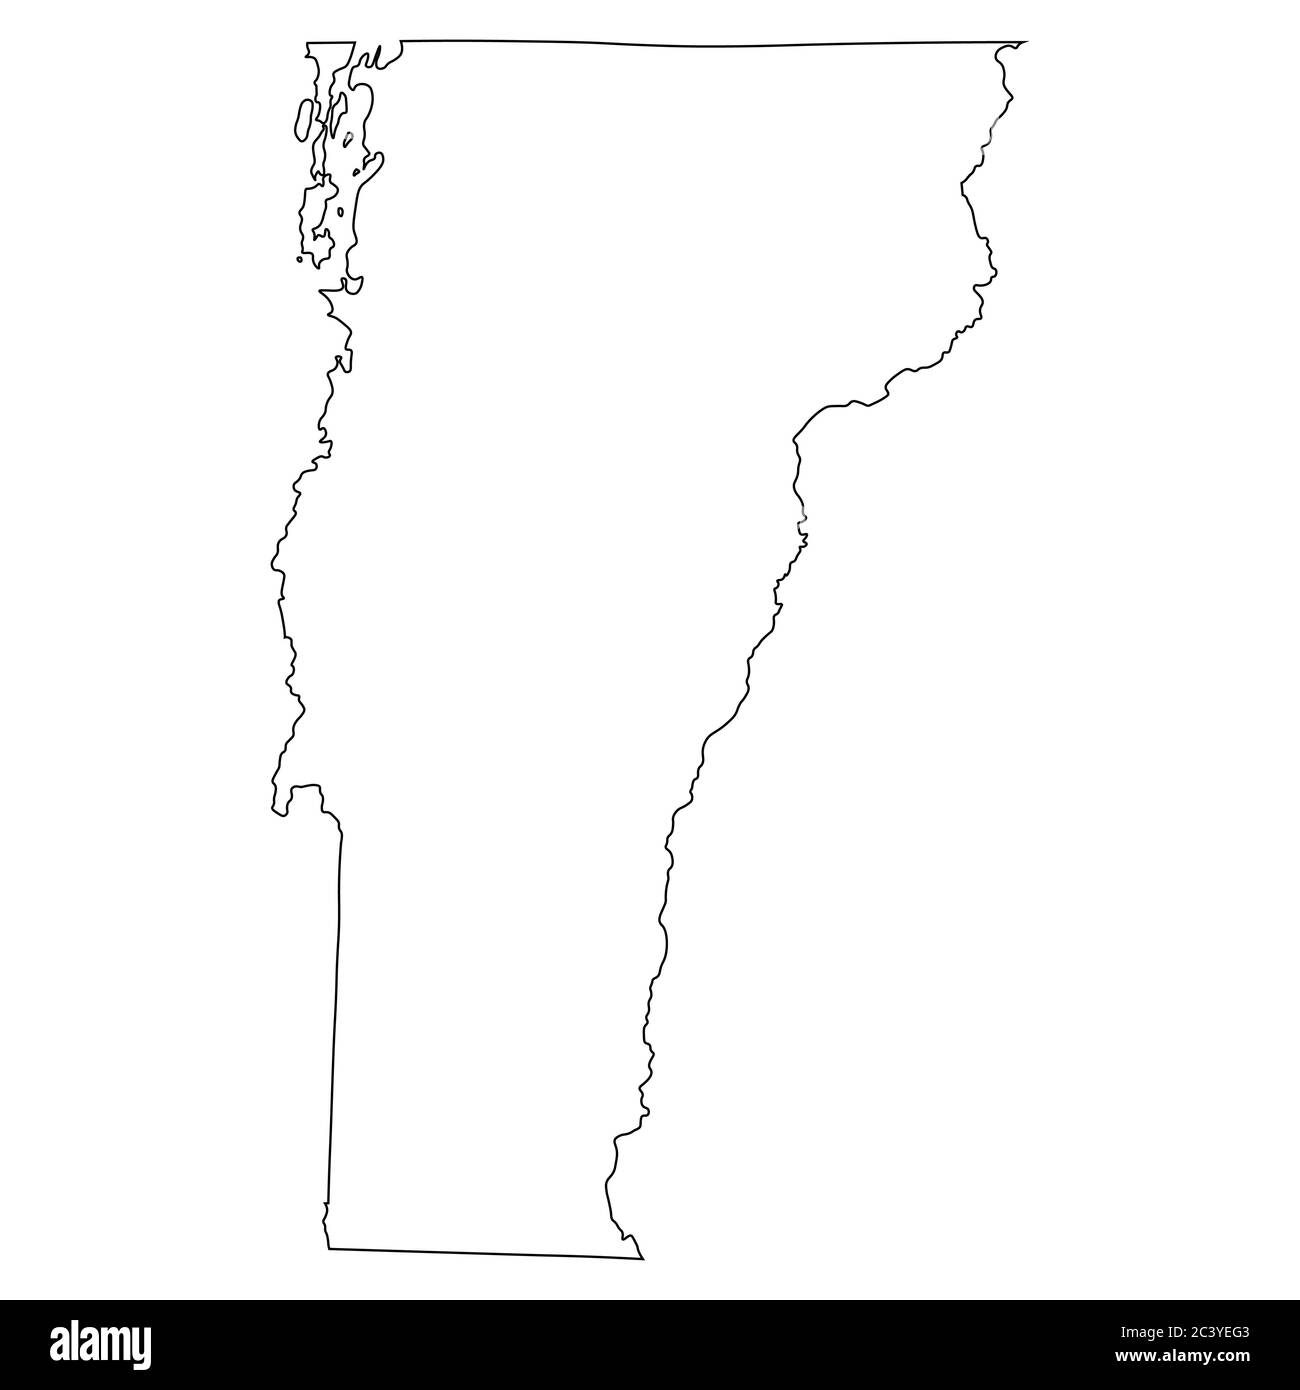 Vermont VT State Map USA. Schwarze Umrisskarte isoliert auf weißem Hintergrund. EPS-Vektor Stock Vektor